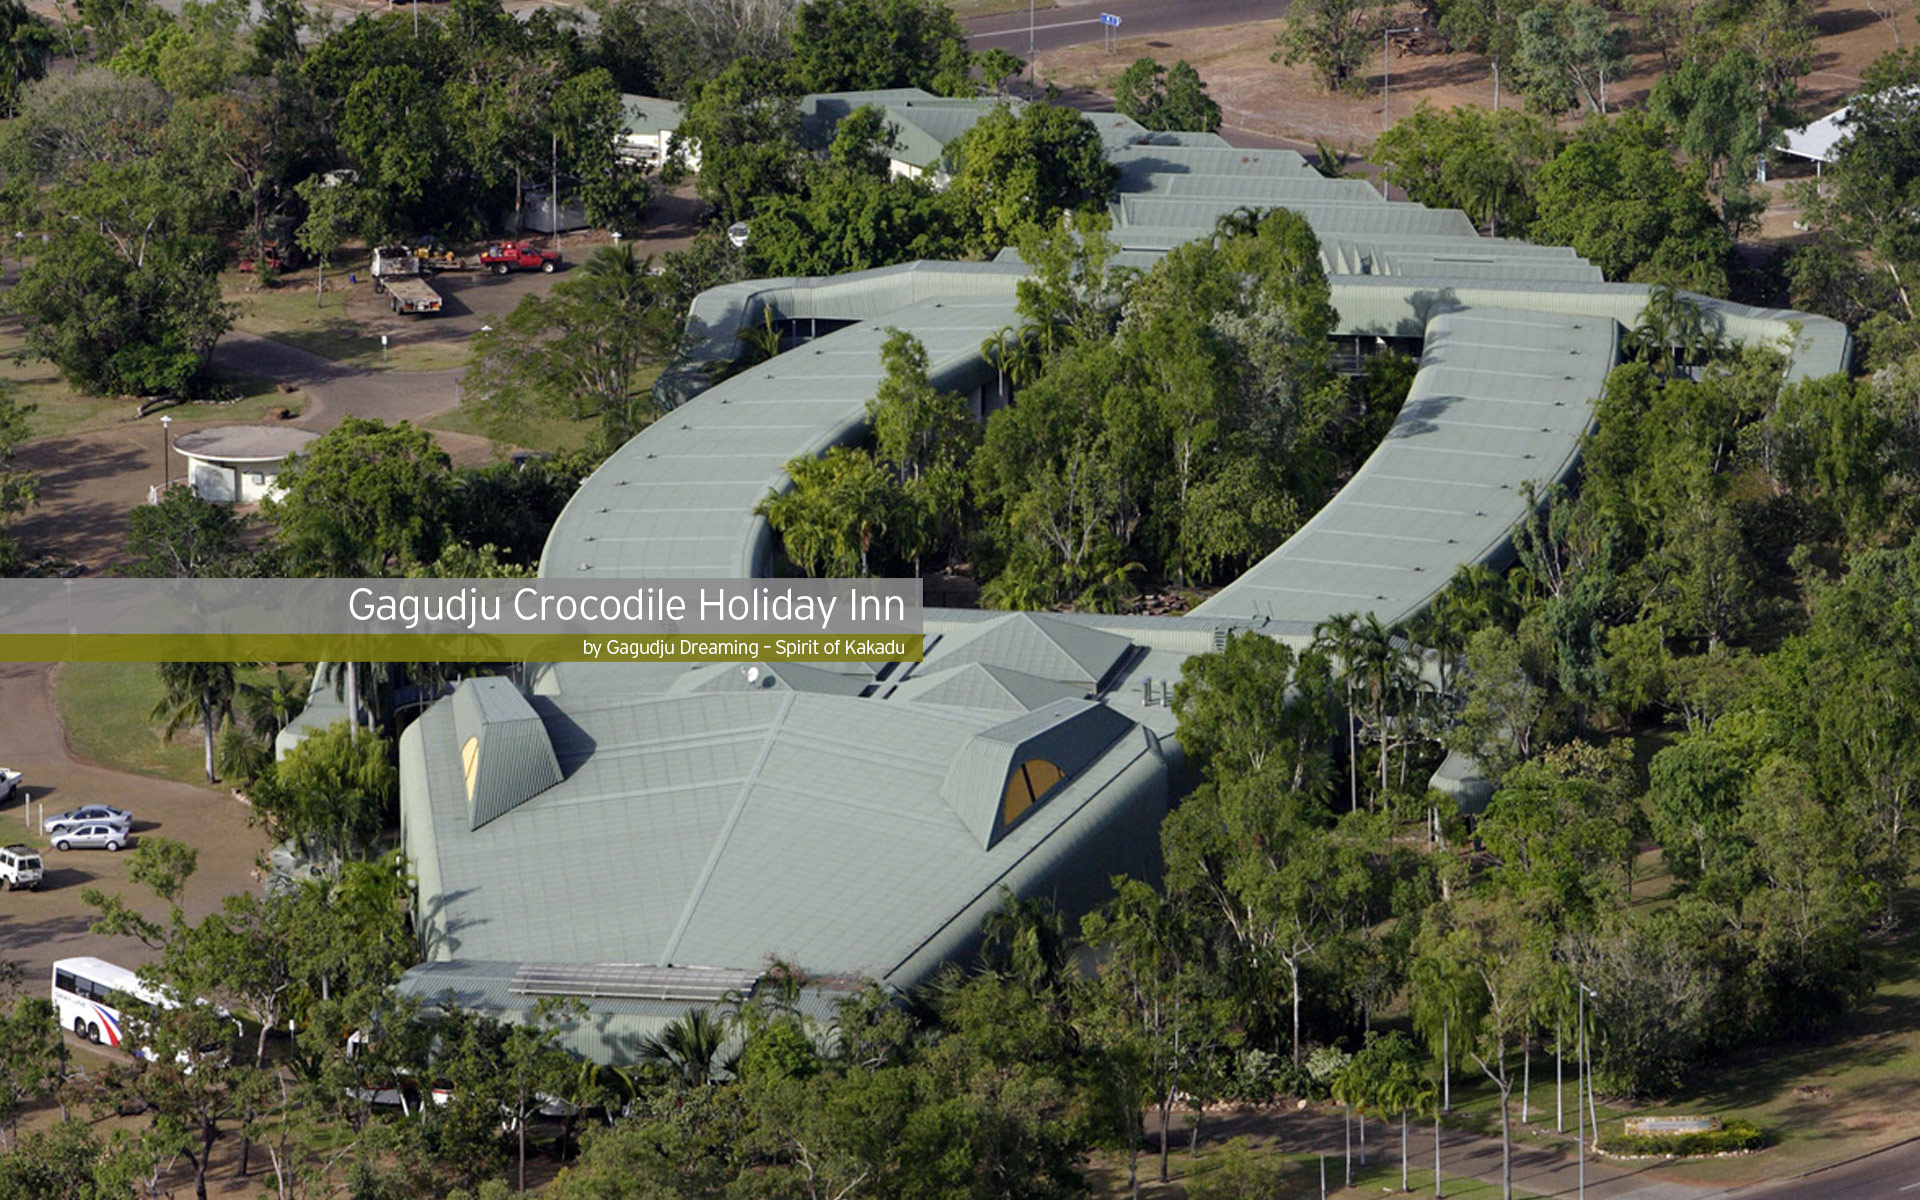 Gagudju Crocodile Holiday Inn, Australia 1